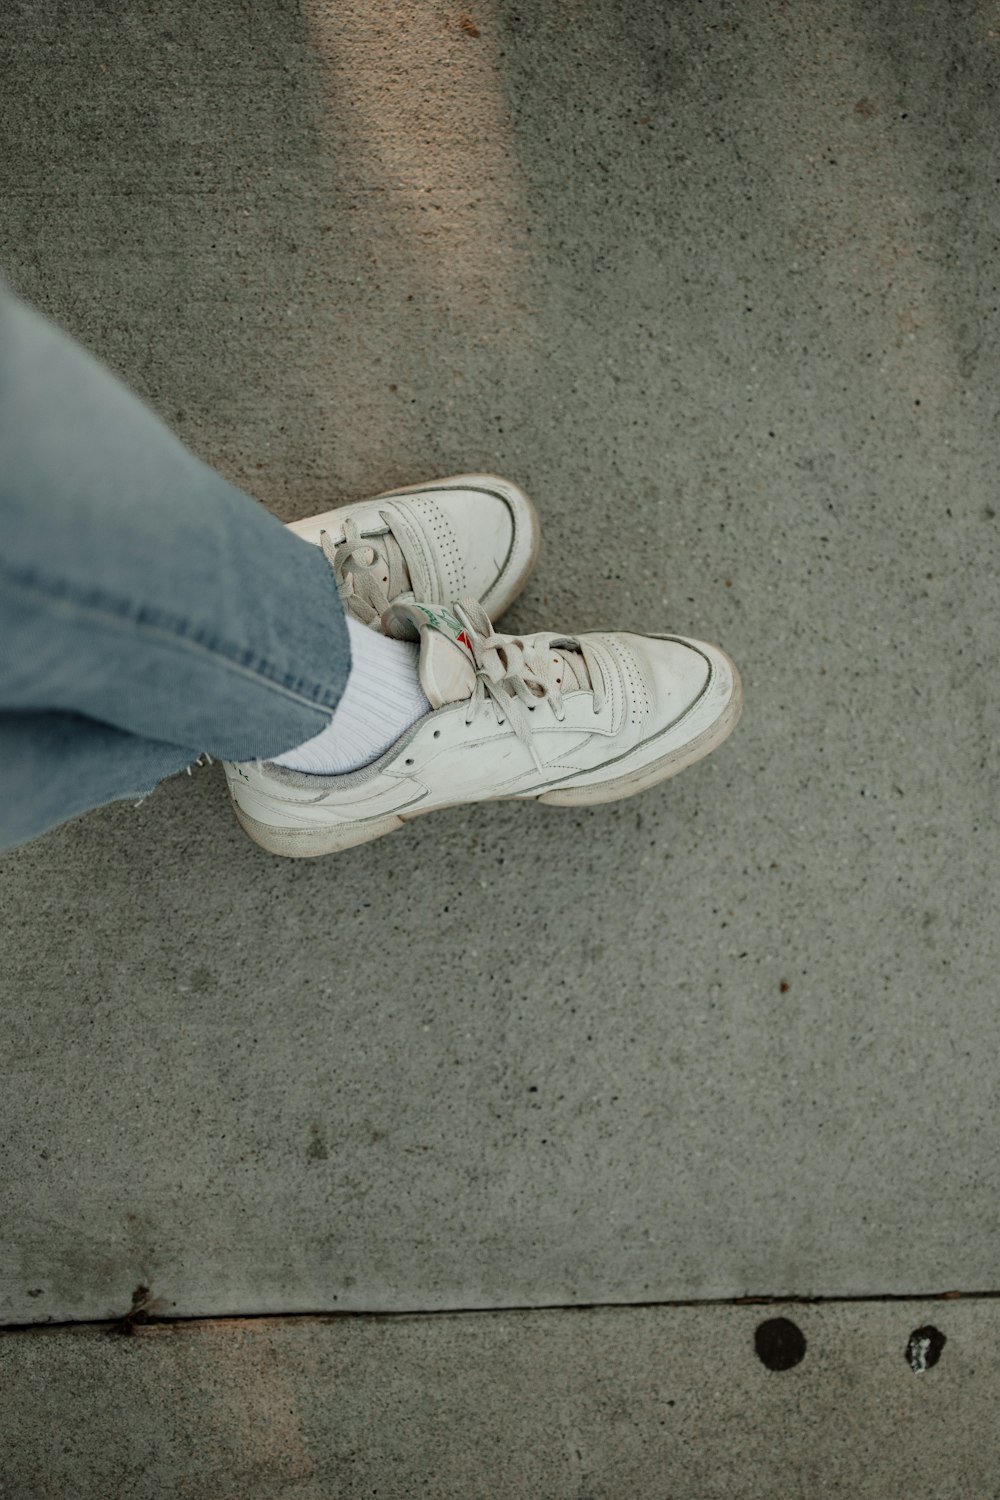 une personne debout sur un trottoir avec ses chaussures